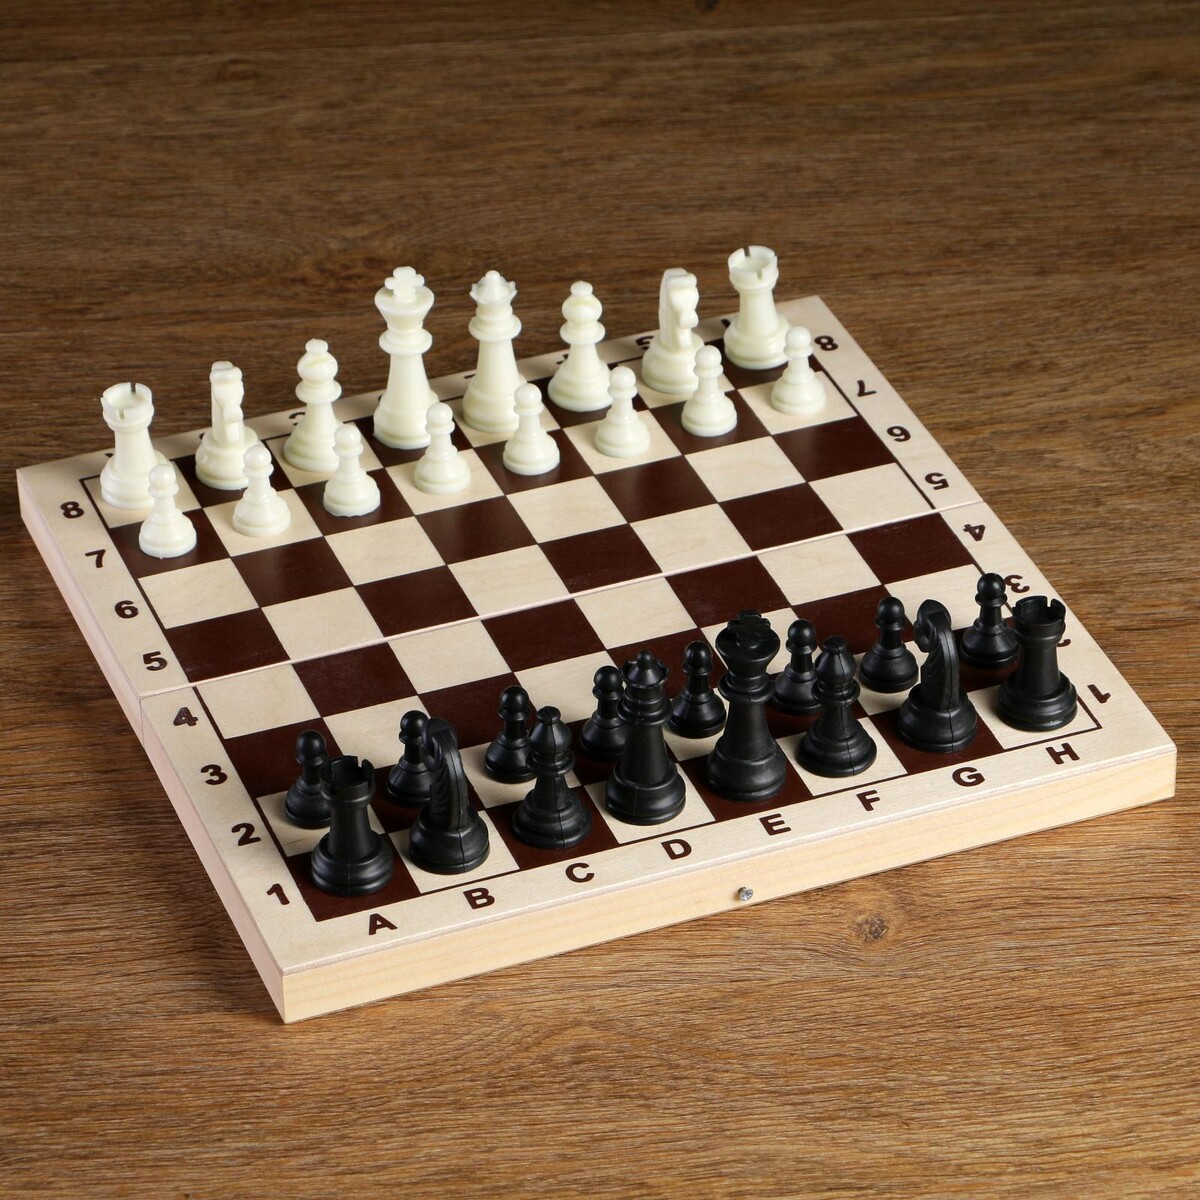 Шахматные фигуры, пластик, король h-6.2 см, пешка h-3 см король ардена 3